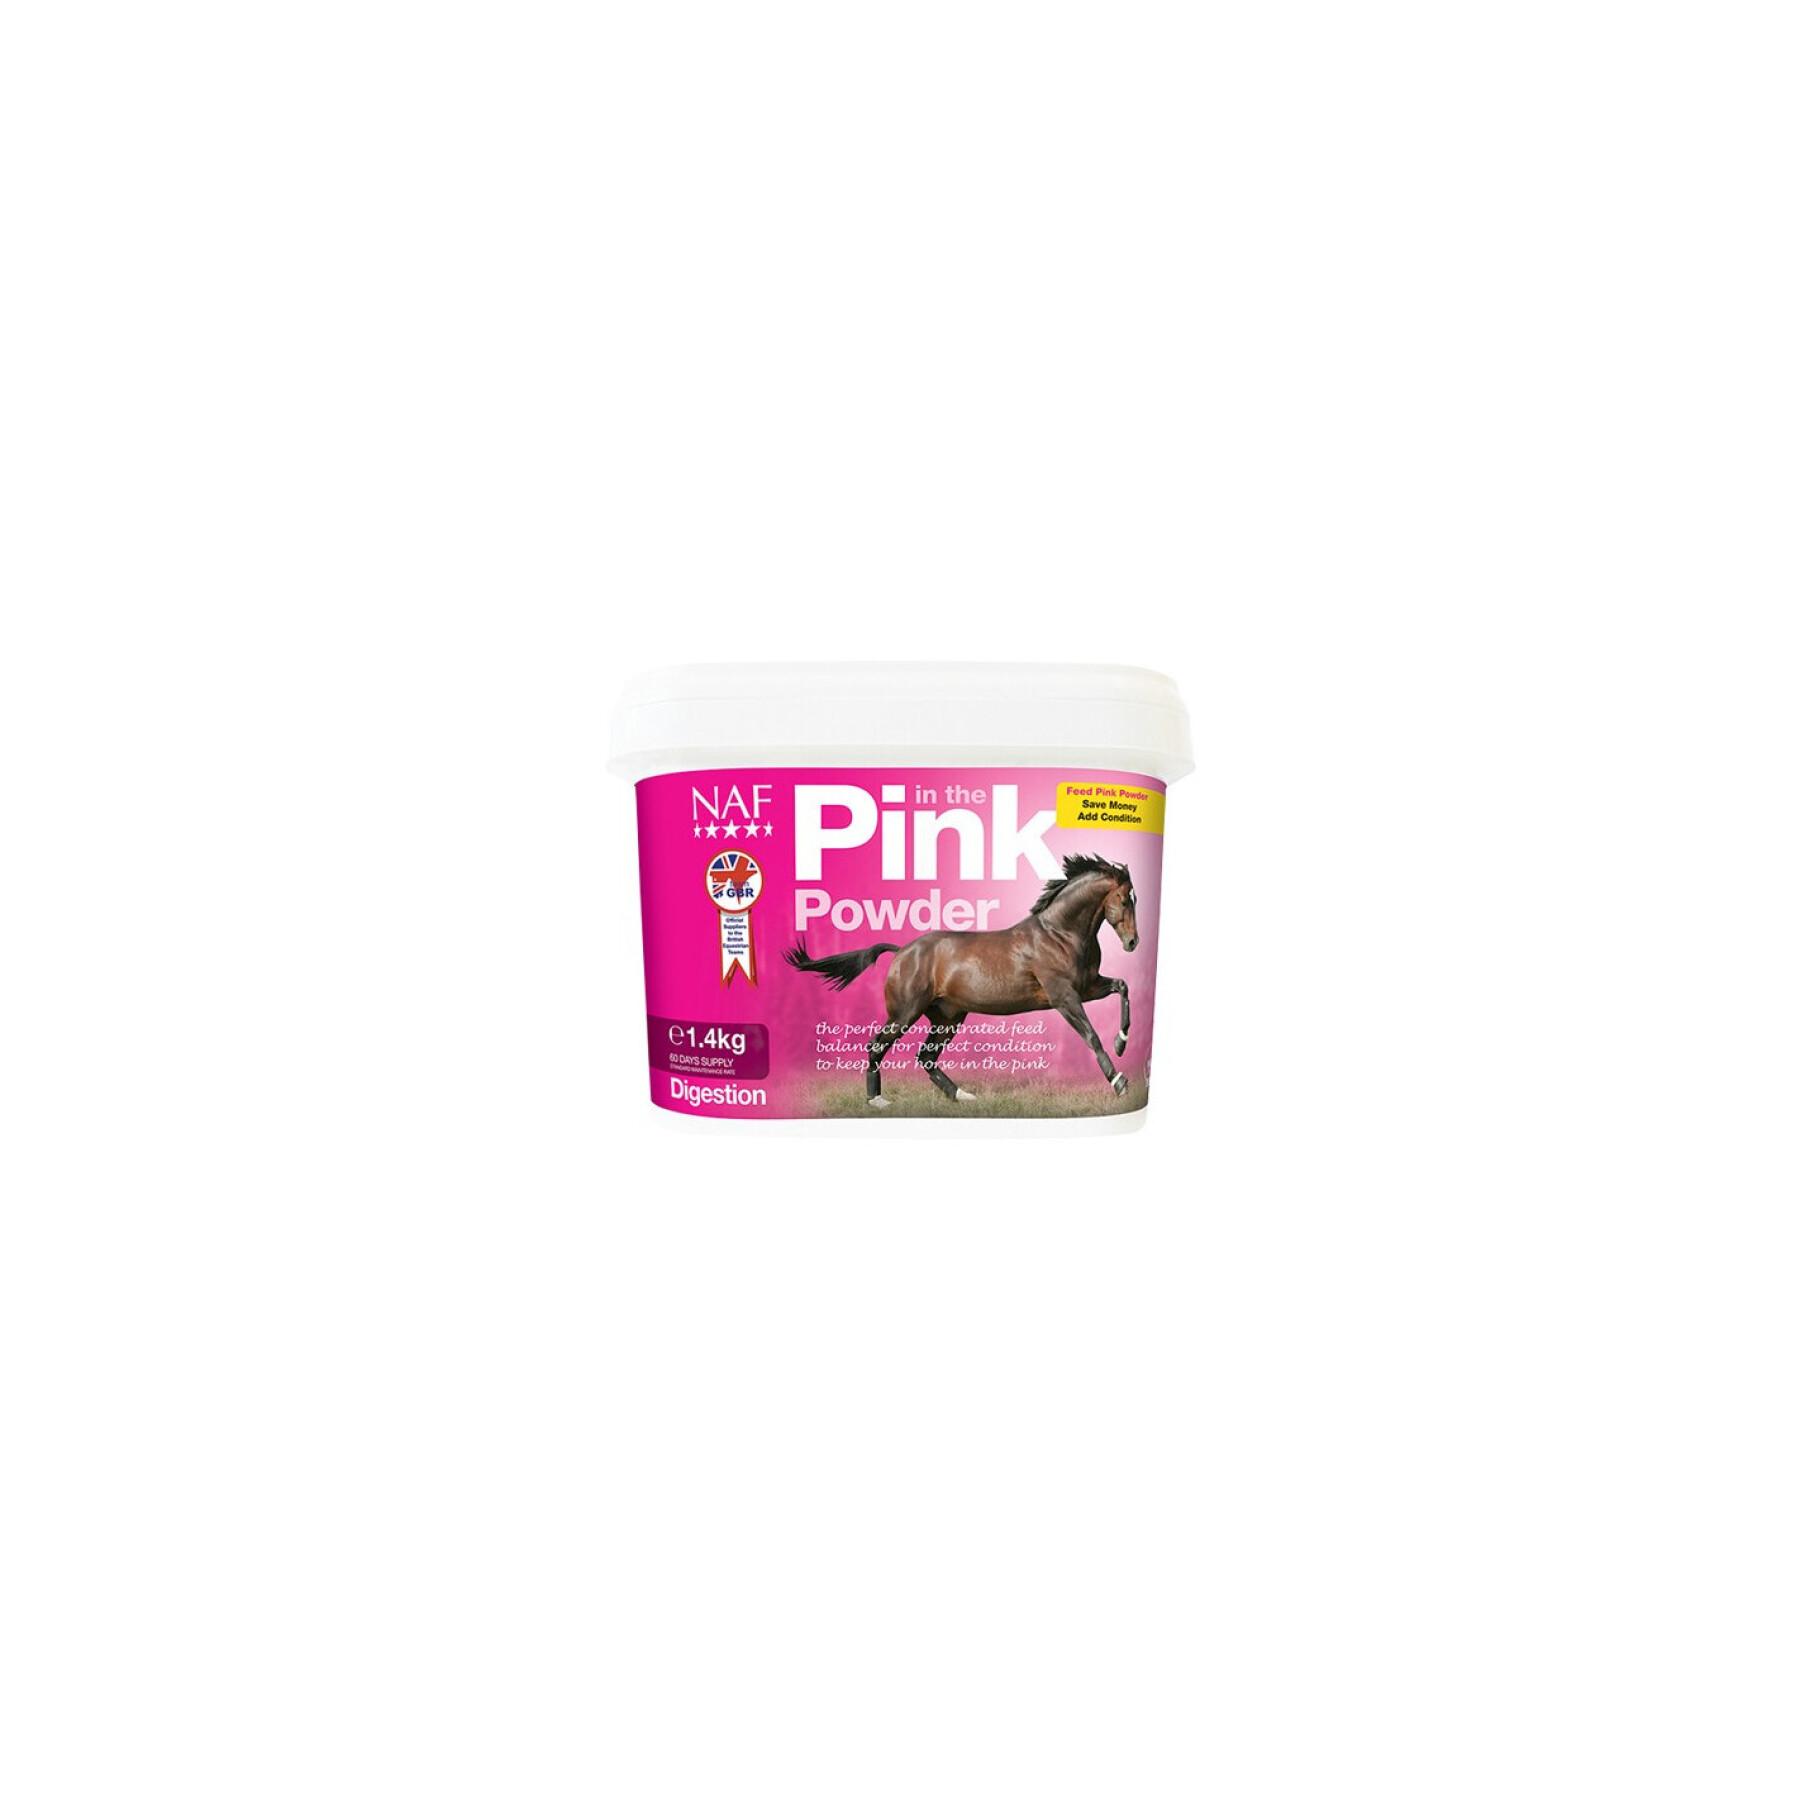 Ergänzungsfuttermittel Verdauung für Pferde NAF In the Pink Powder